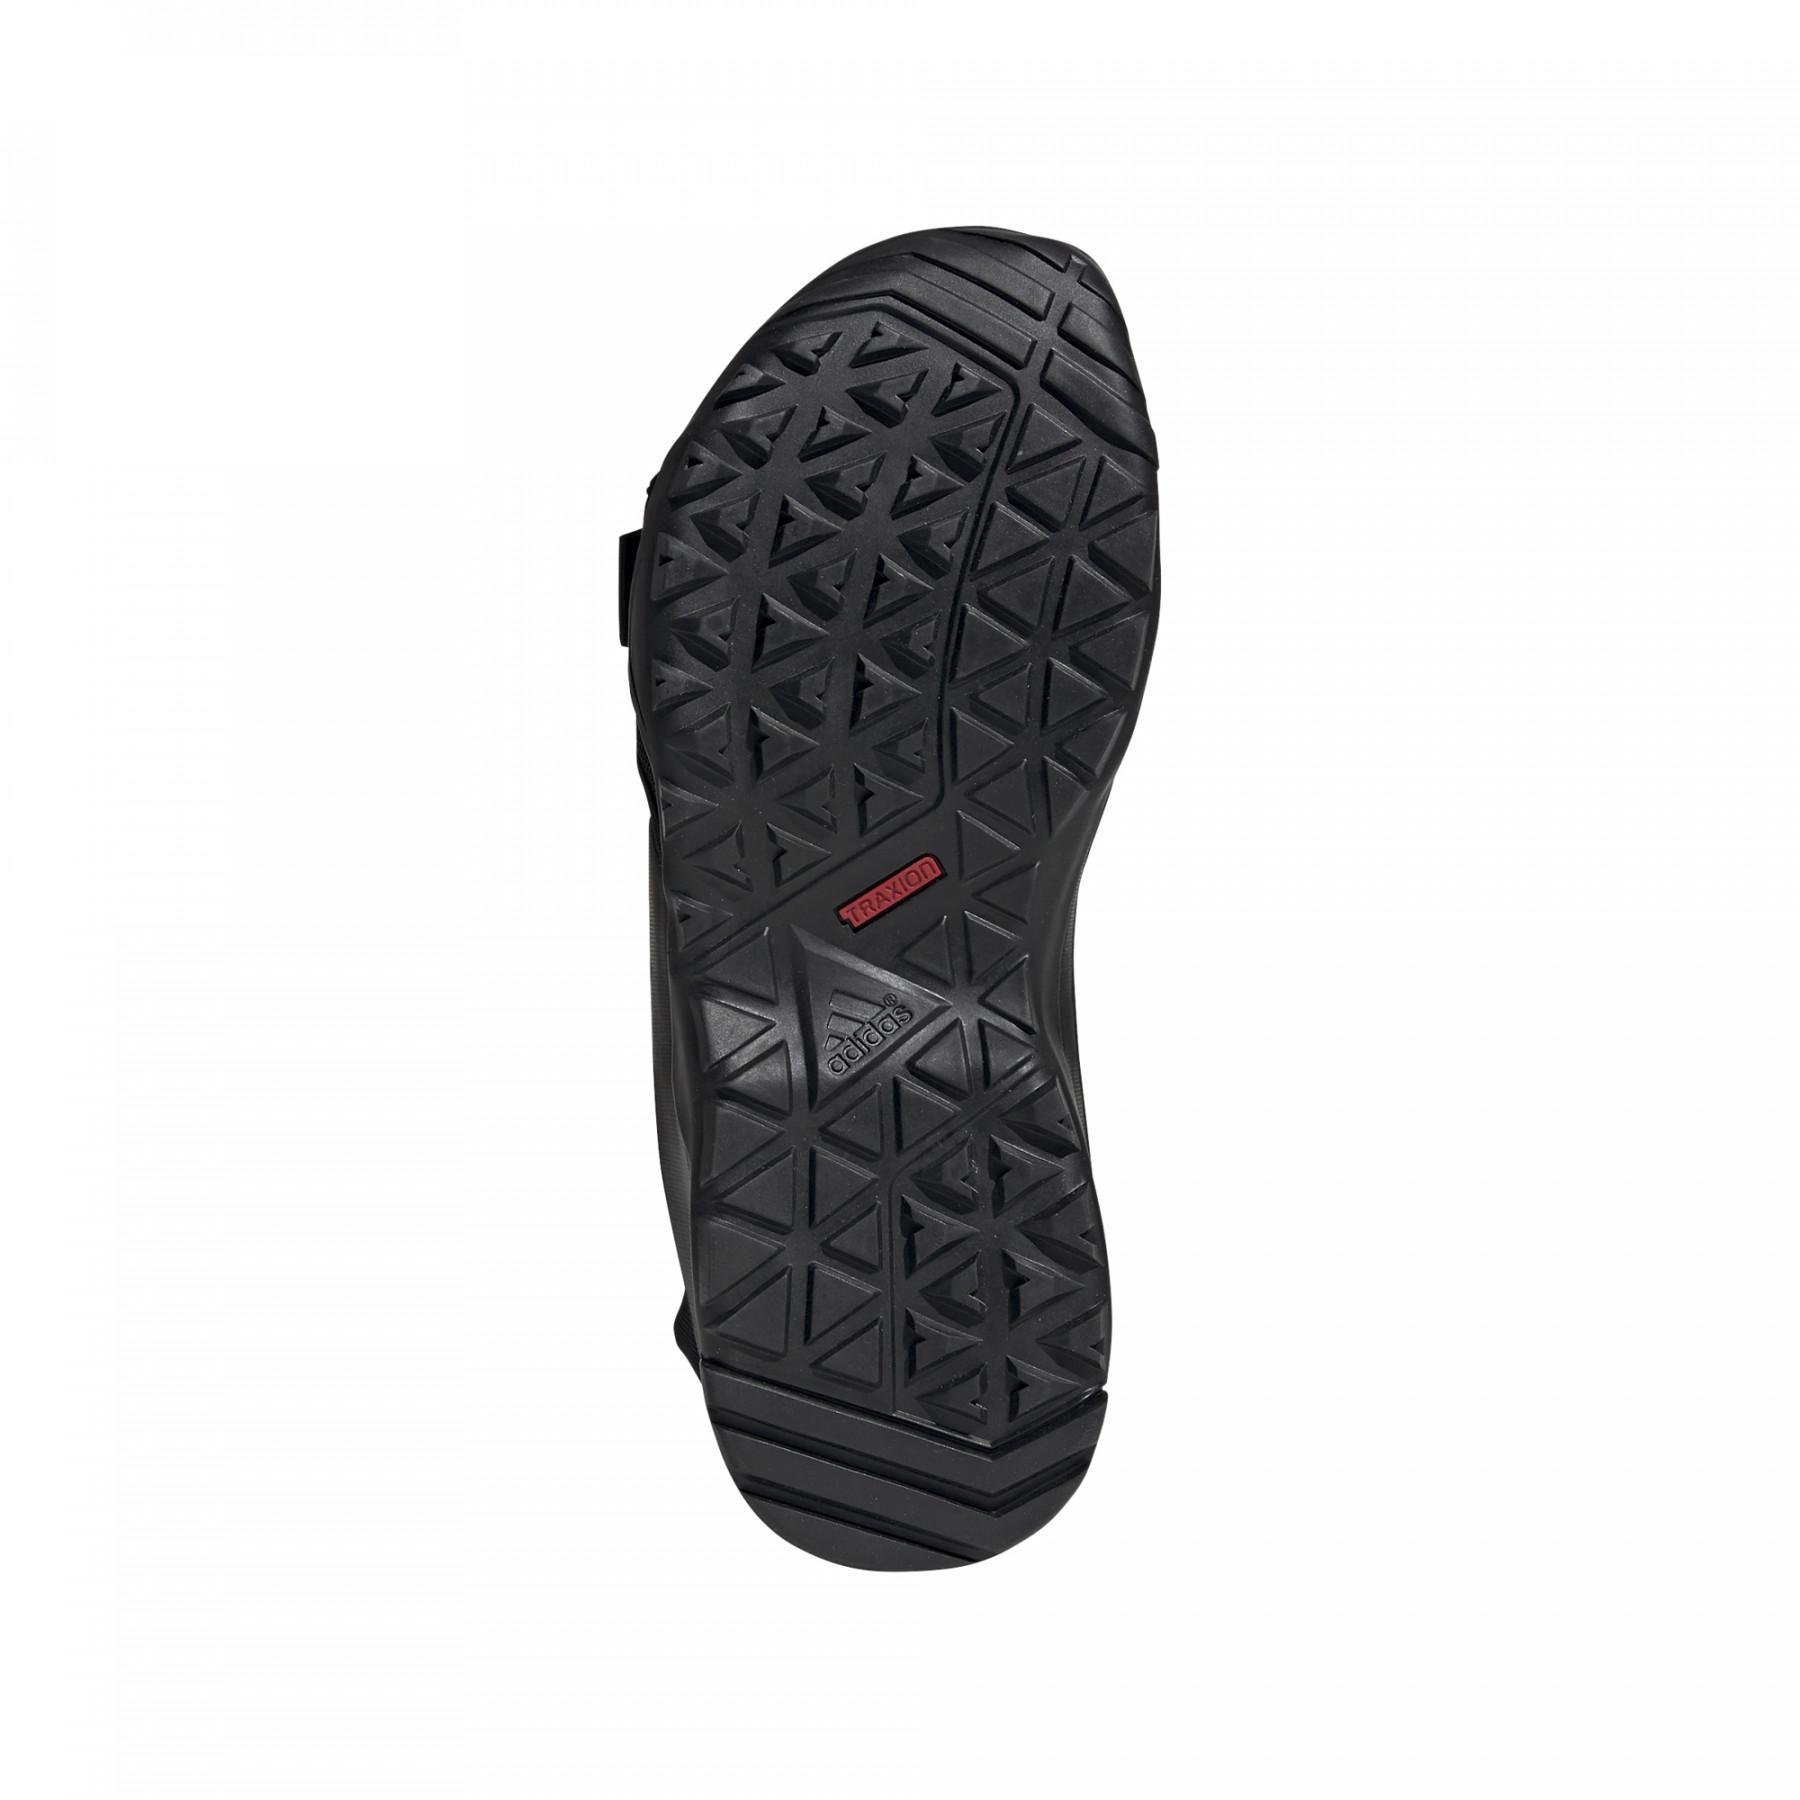 Sandalo adidas Cyprex Ultra DLX